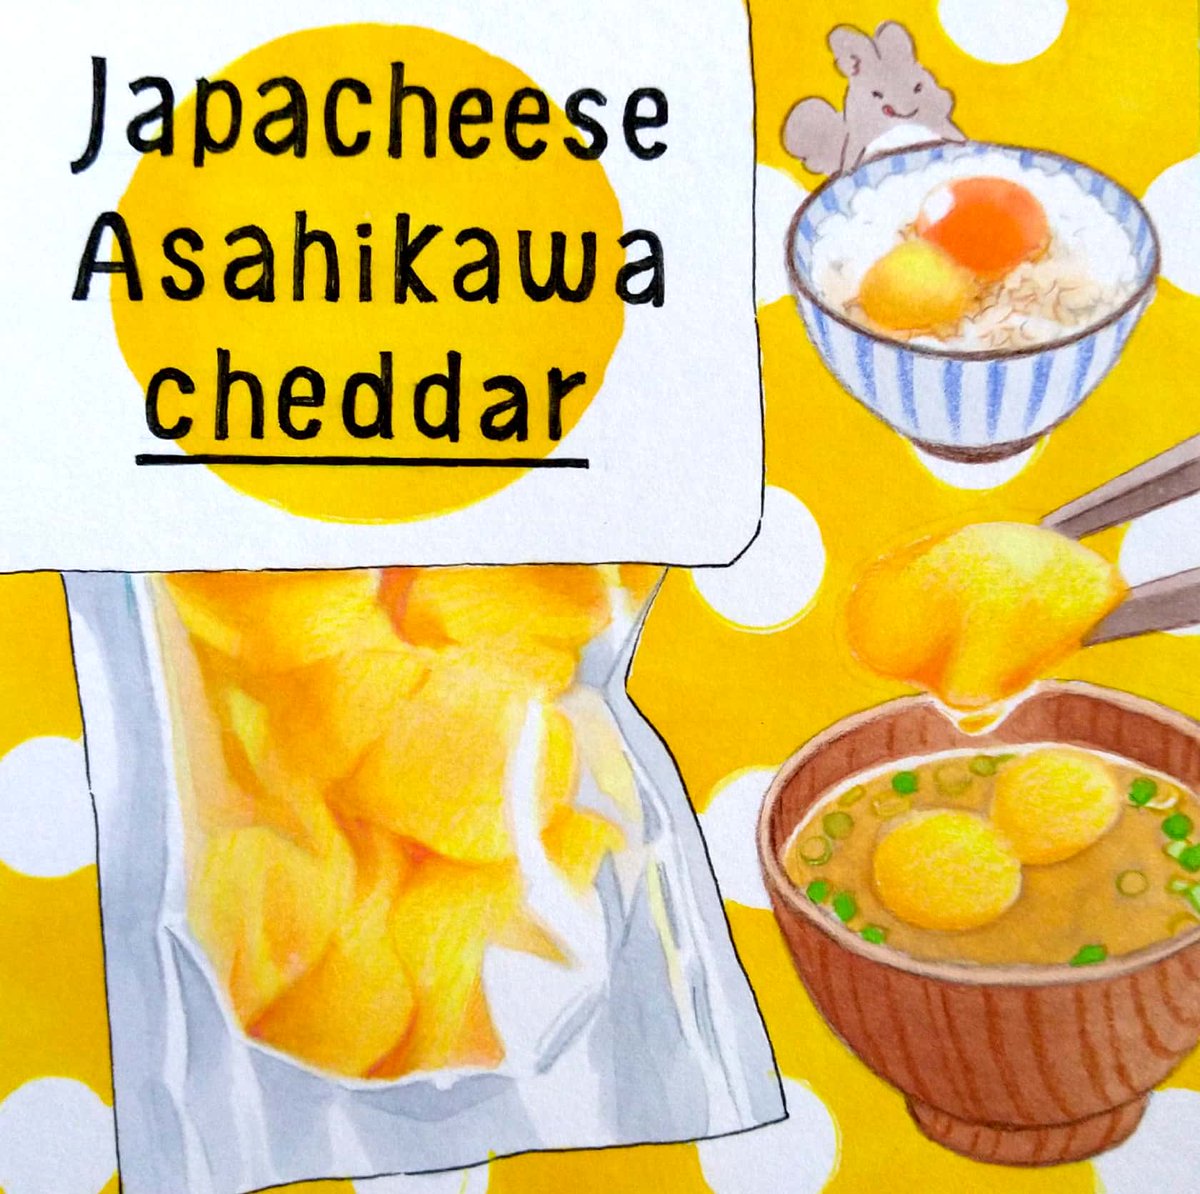 今日はたまごかけごはんの日。ジャパチーズ旭川さんのチェダーチーズ。フレッシュでチーズ特有のクセの無い味が、お味噌汁の具にしたり卵かけご飯に乗せたりと、和食にも合います。札幌の円山エリアにある「チーズの店コンテ」さんでも購入できます。 #田島ハルのくいしん簿